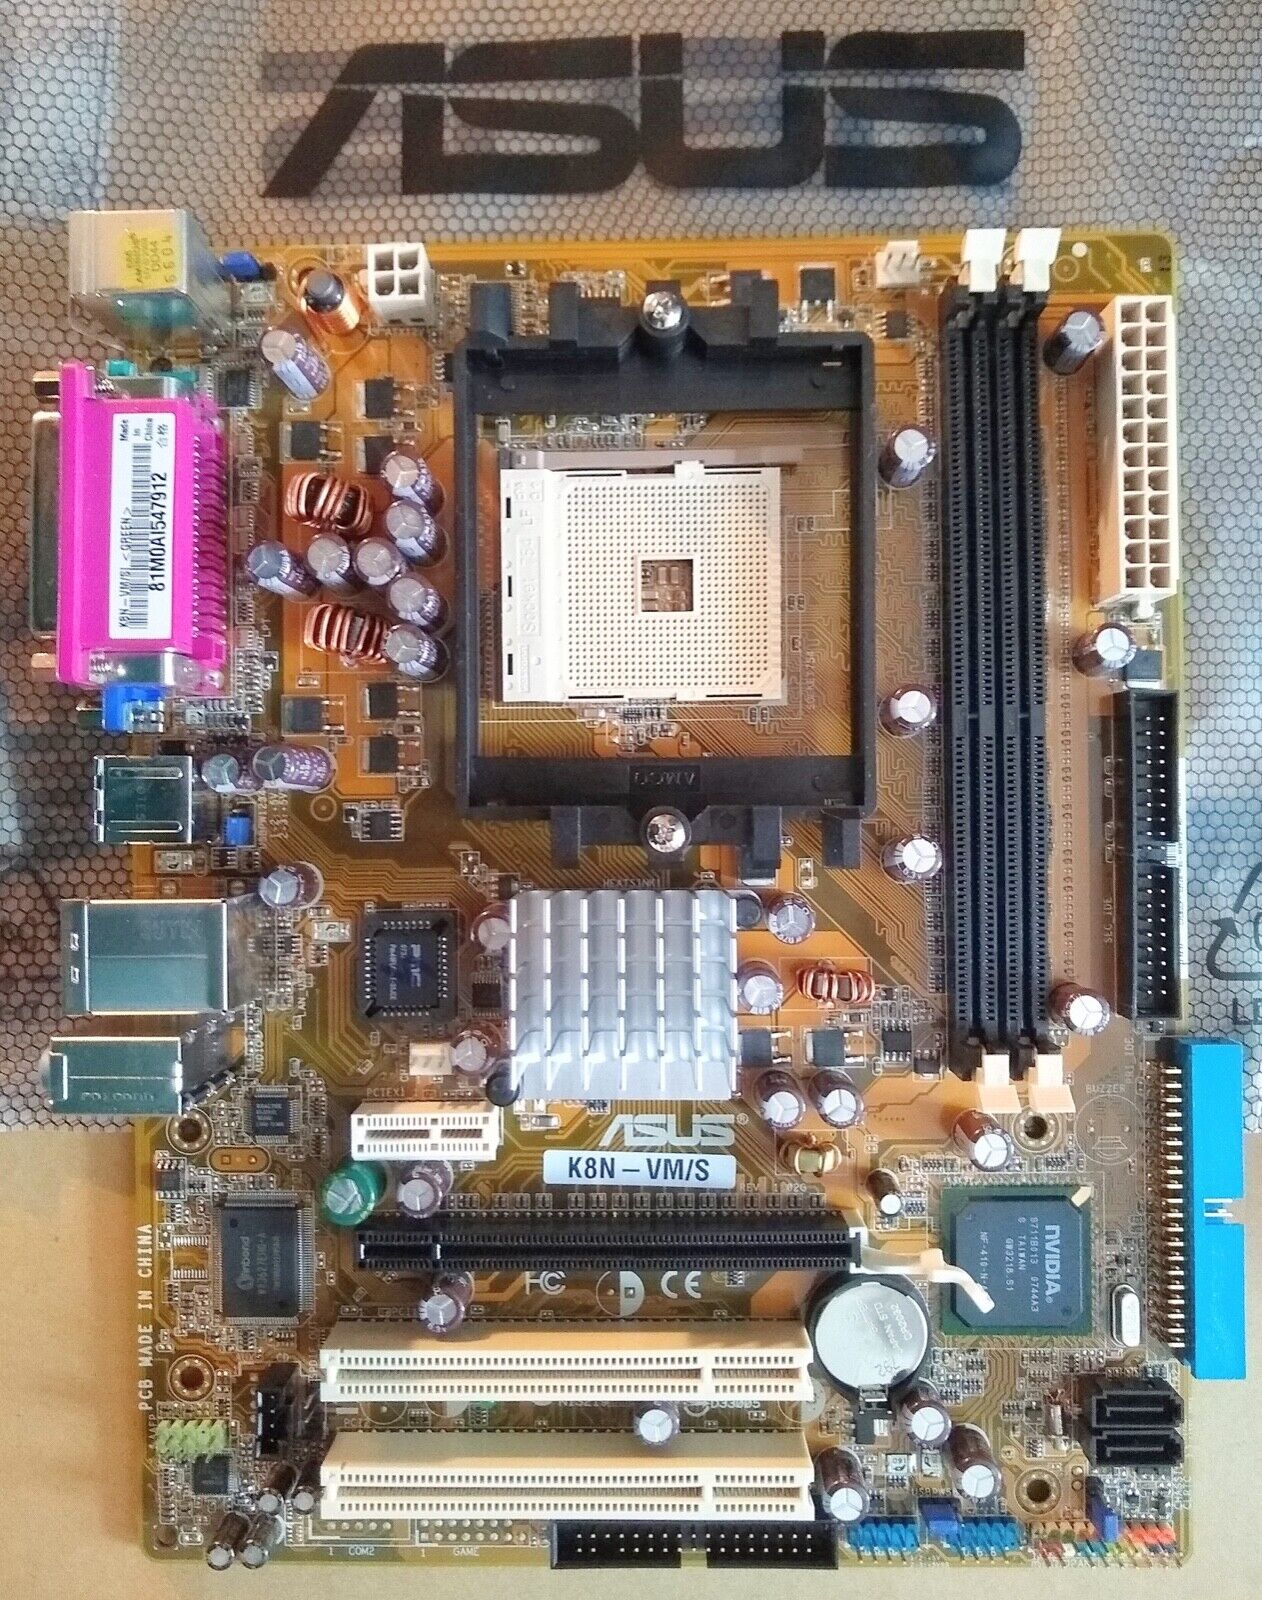 MEGATOUCH Motherboard Asus K8N-VM/S Rev 1.02G Socket 754 Board NOS Merit Game